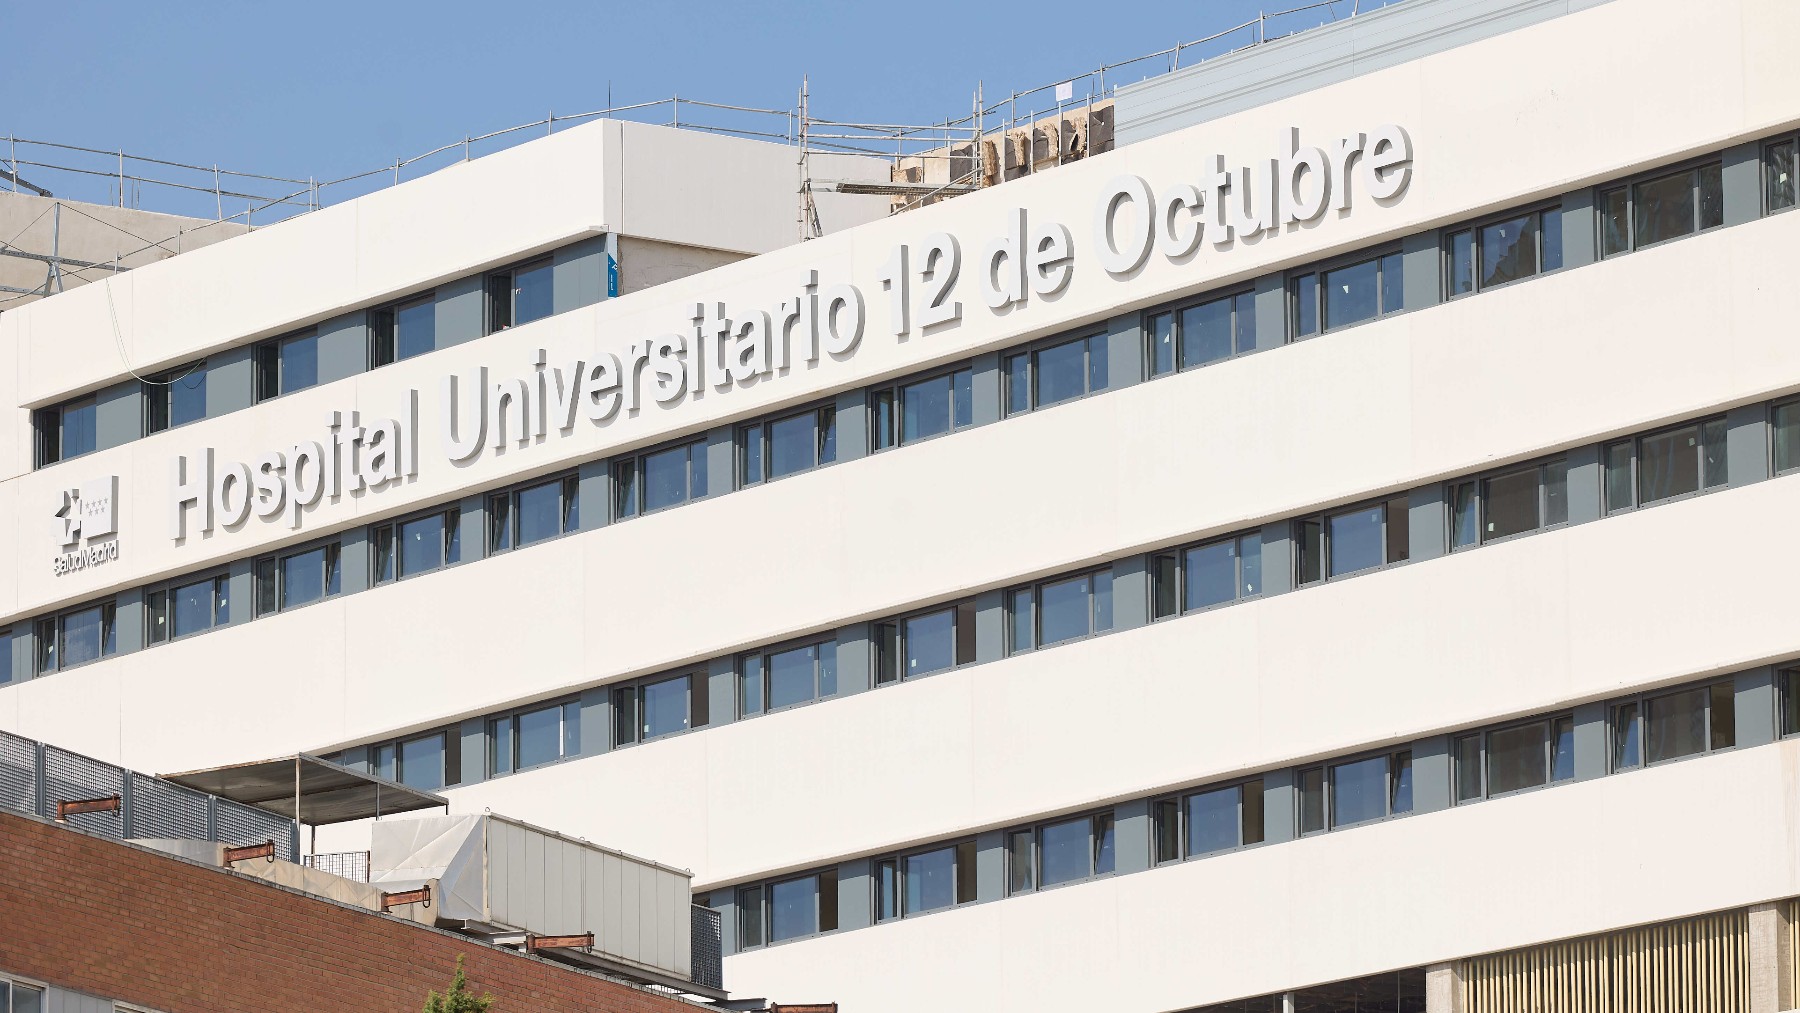 Cirugía contra la apnea del sueño: el Hospital del Mar realiza una  operación pionera en Catalunya - El Periódico